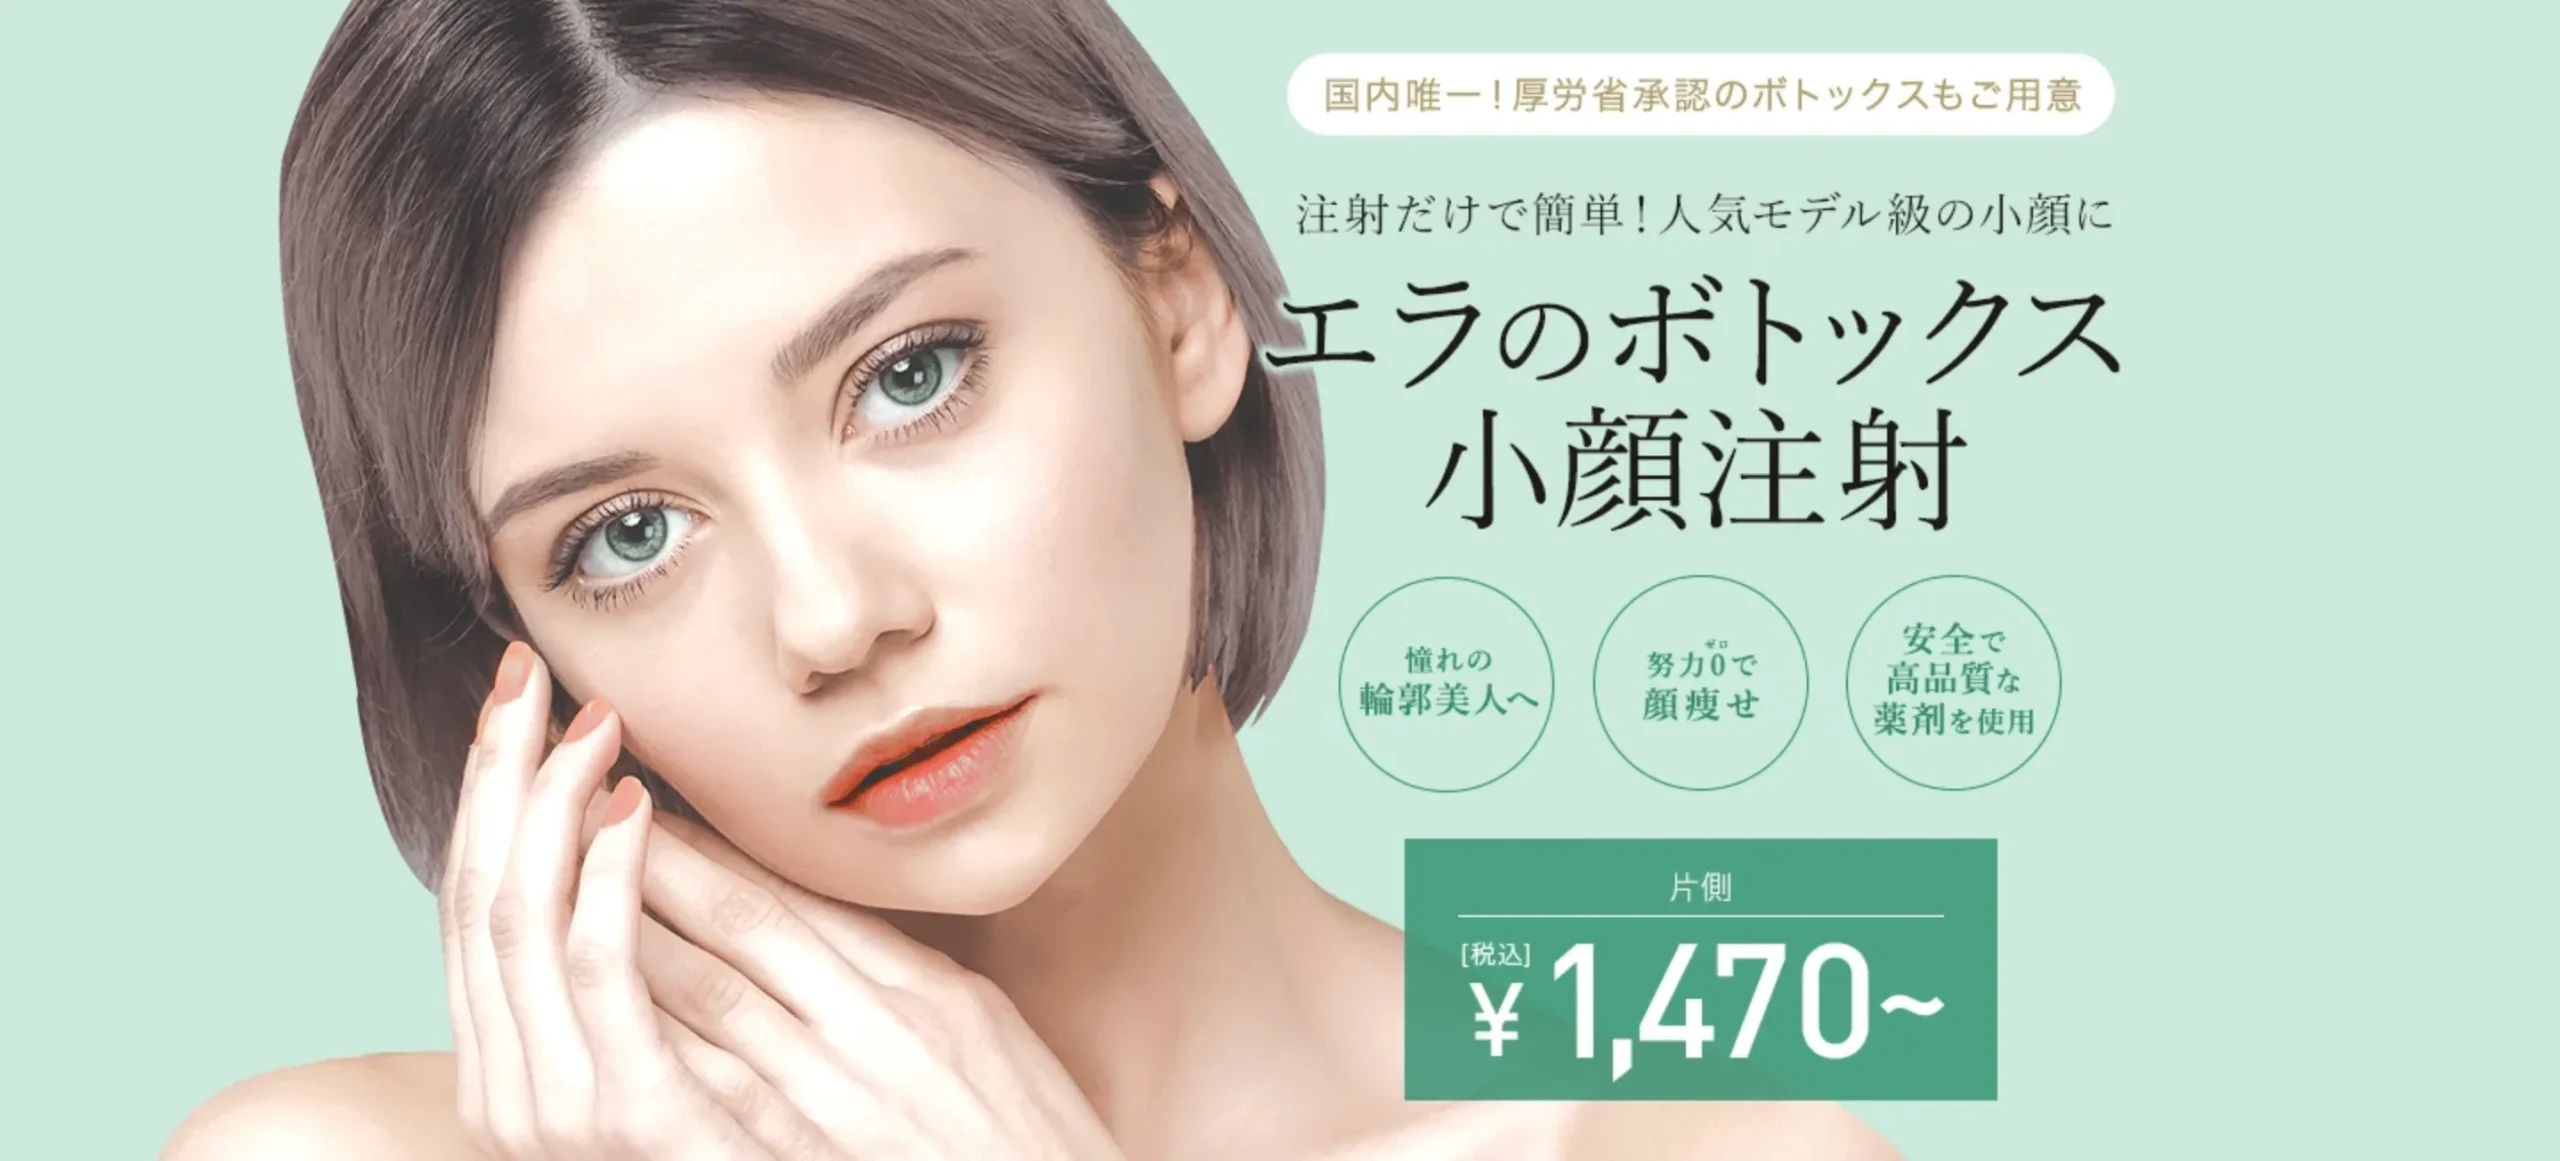 東京中央美容外科のボトックスのアイキャッチ